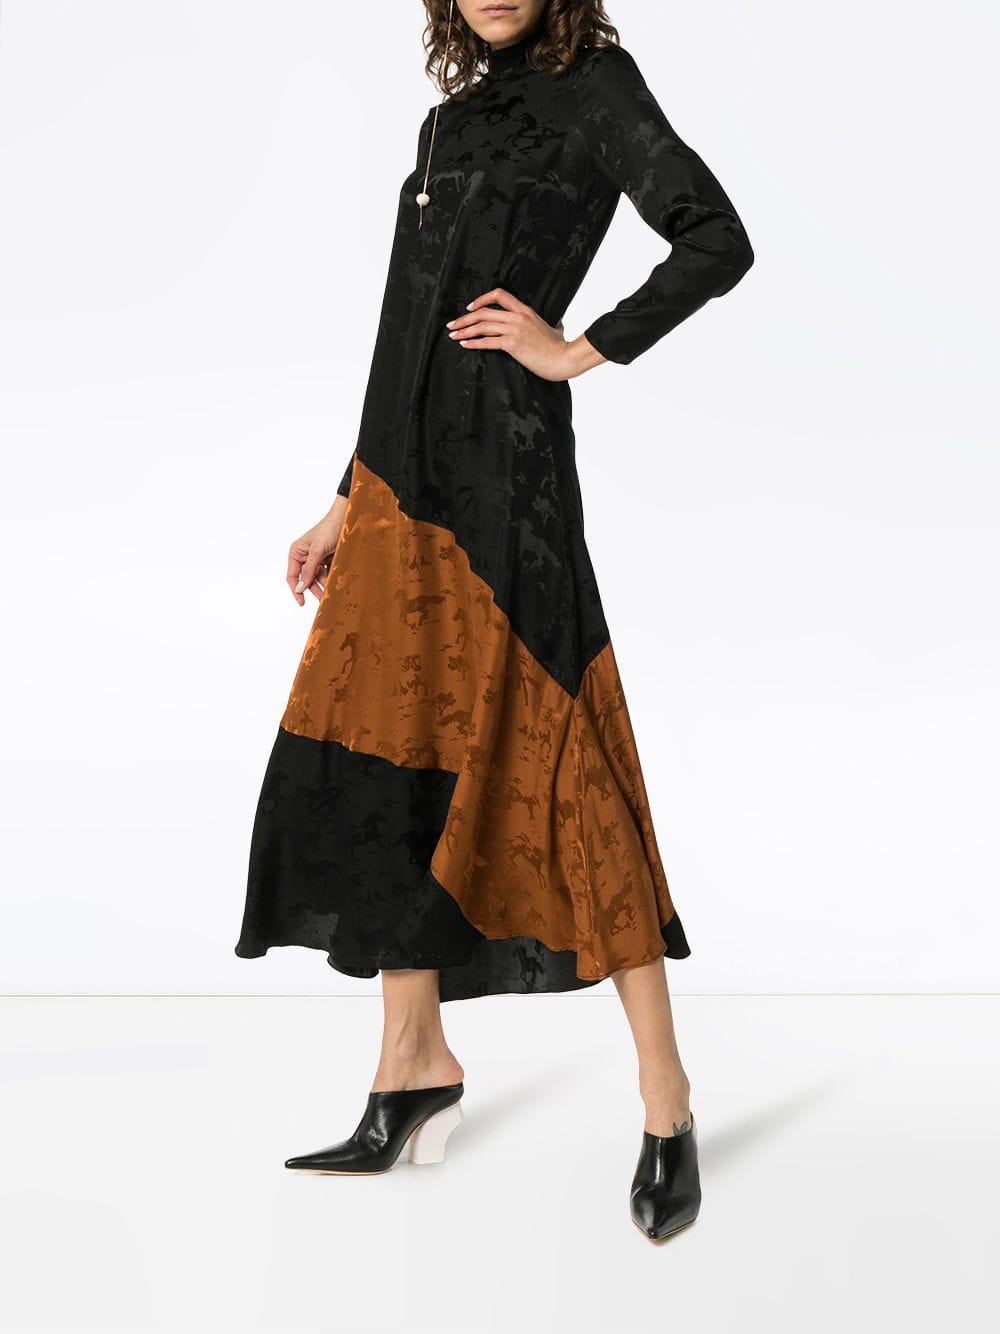 Ganni Ackerly Horse Print Silk Dress in Black | Lyst Canada